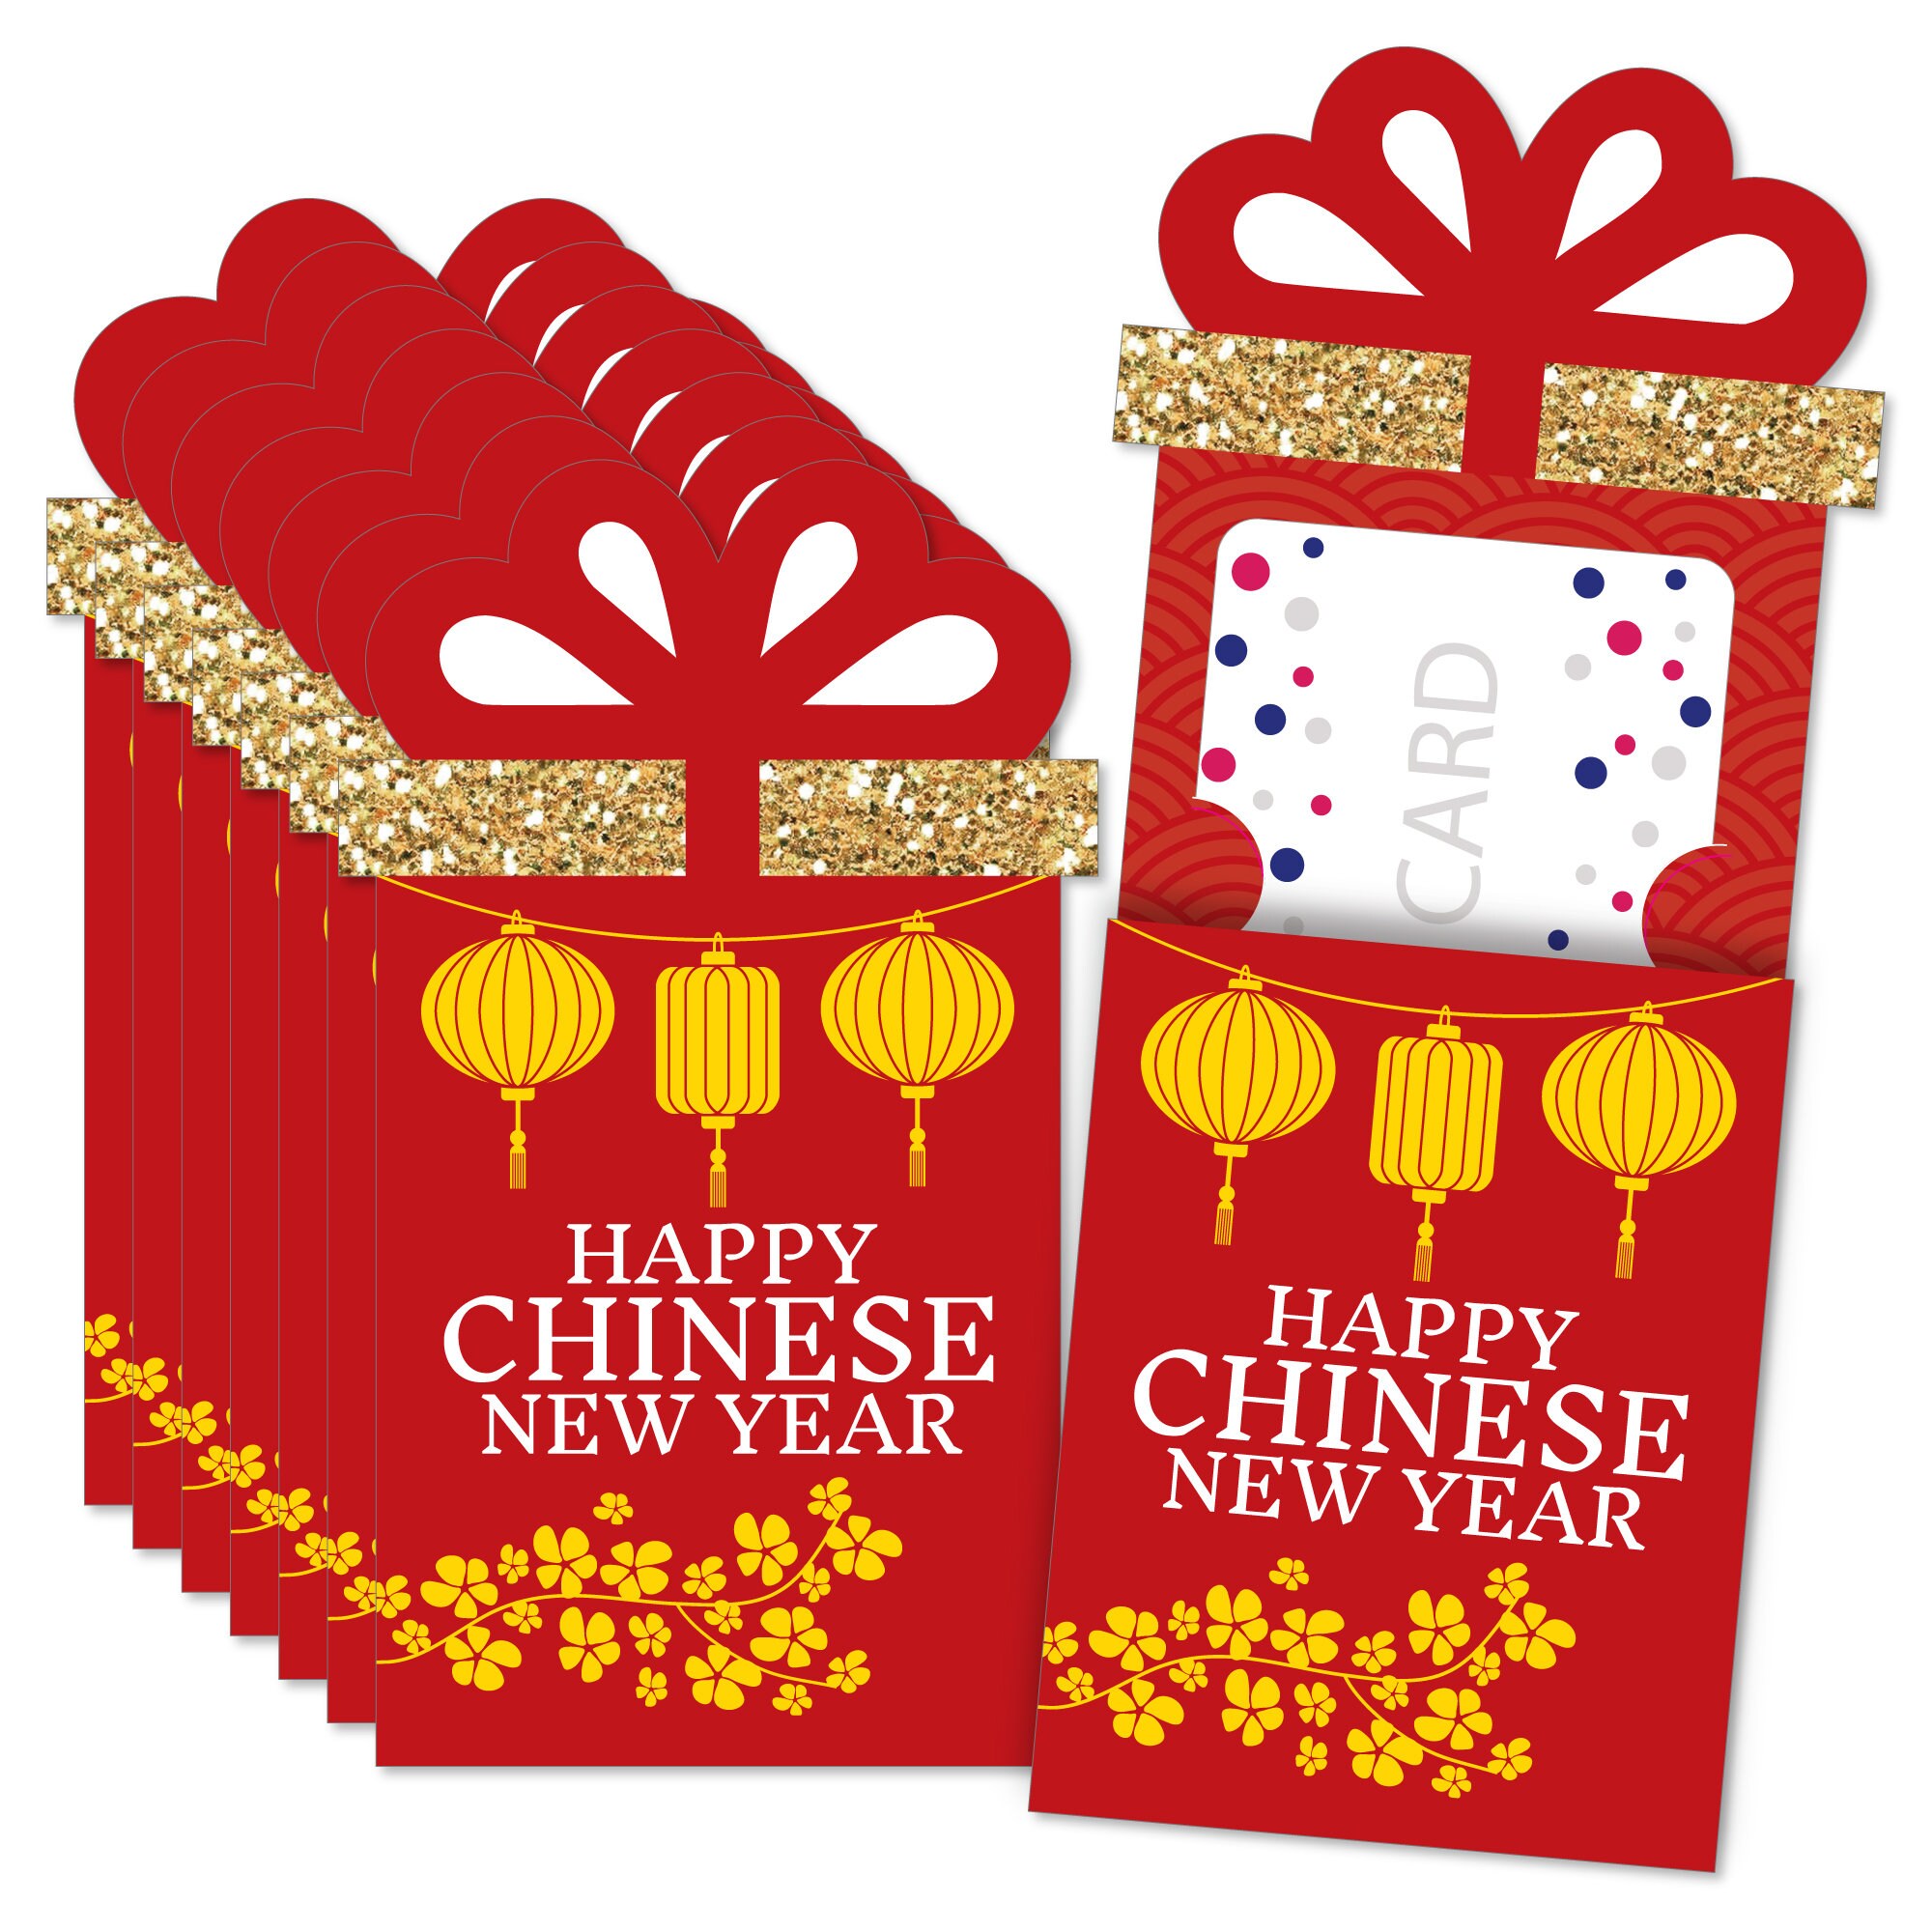 Bausteine Wange5312 Chinesisch Wiedersehen Party Neujahr Geschenk 1437PCS OVP 